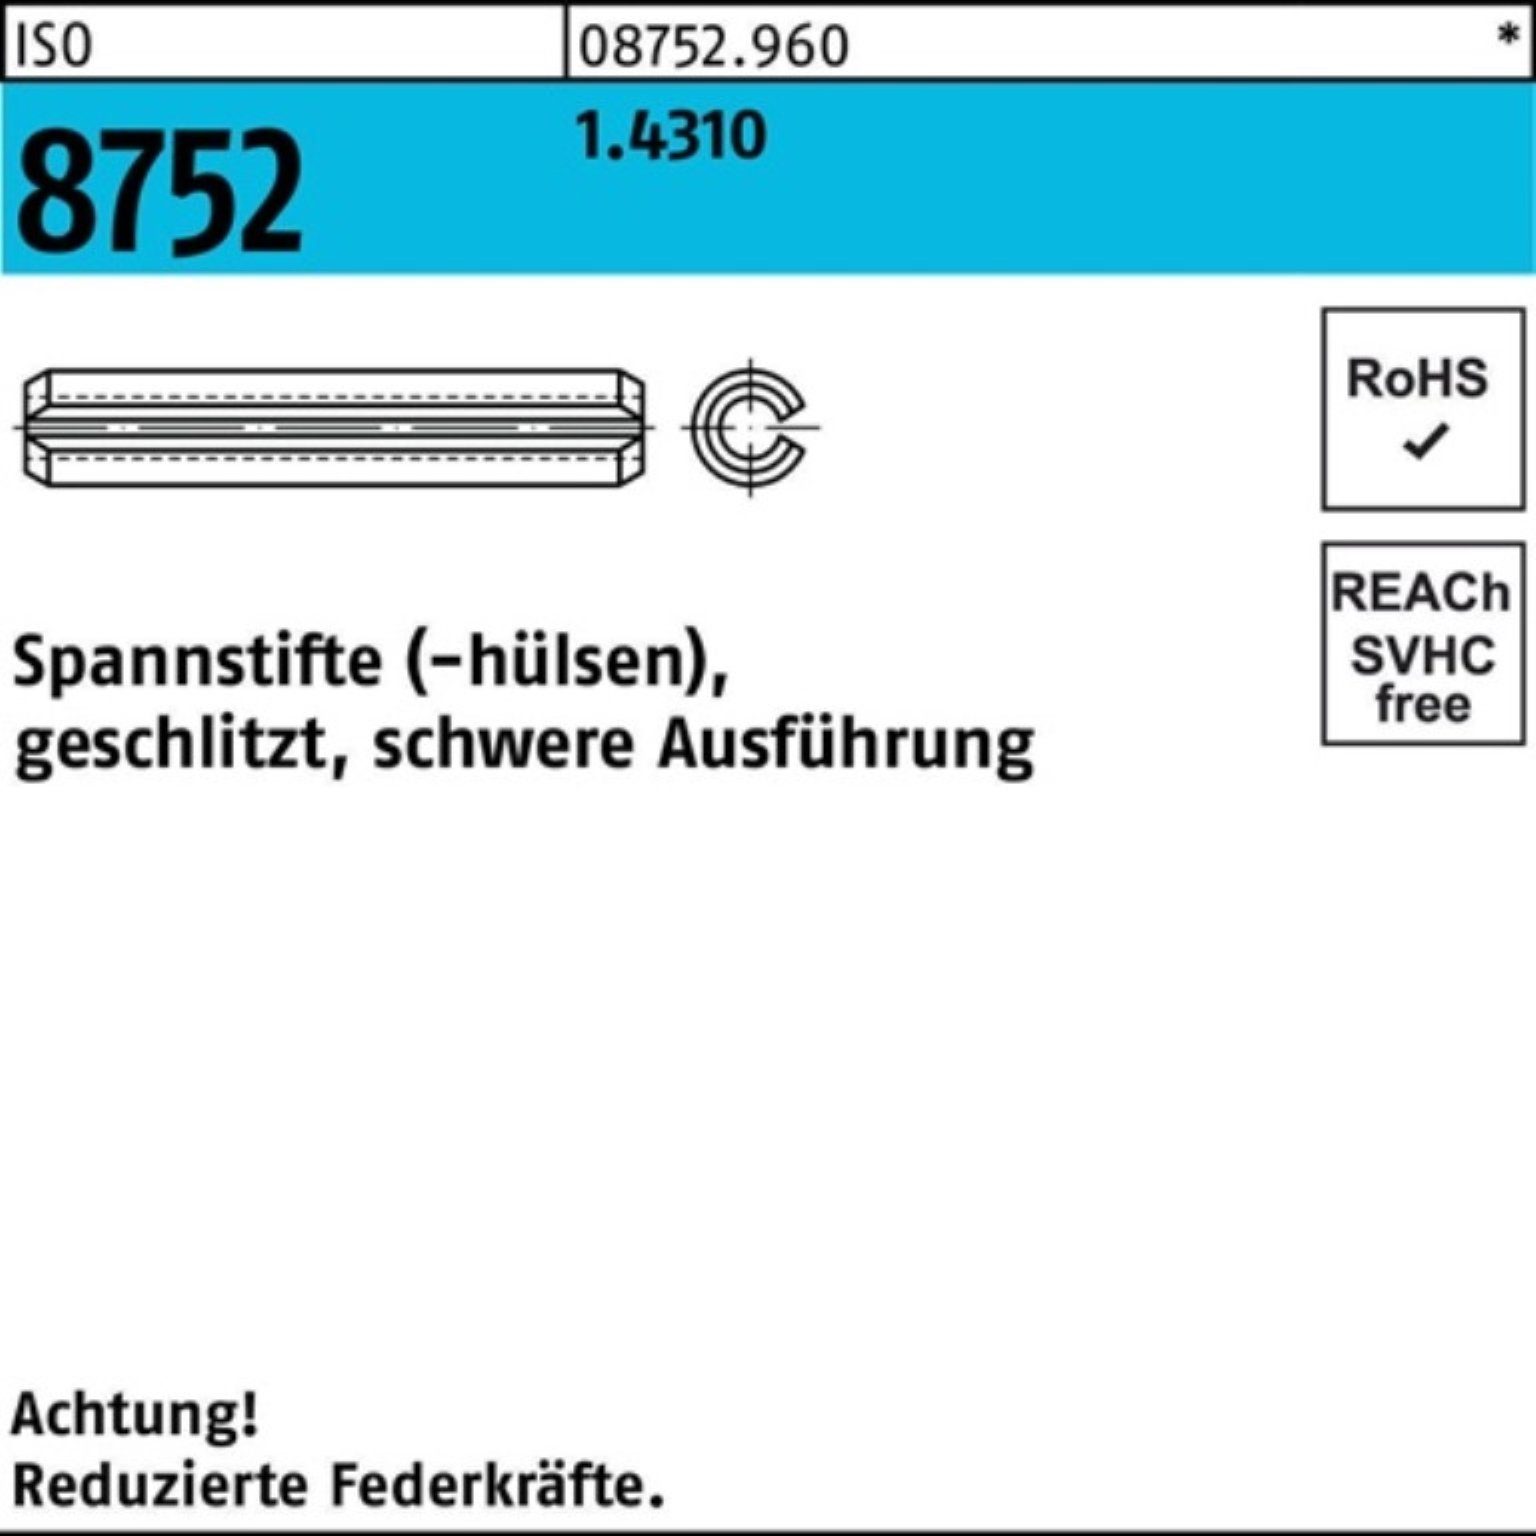 Reyher Spannstift 12 Ausf. 1.4310 100er geschlitzt Pack Spannstift schwere 10x 8752 ISO